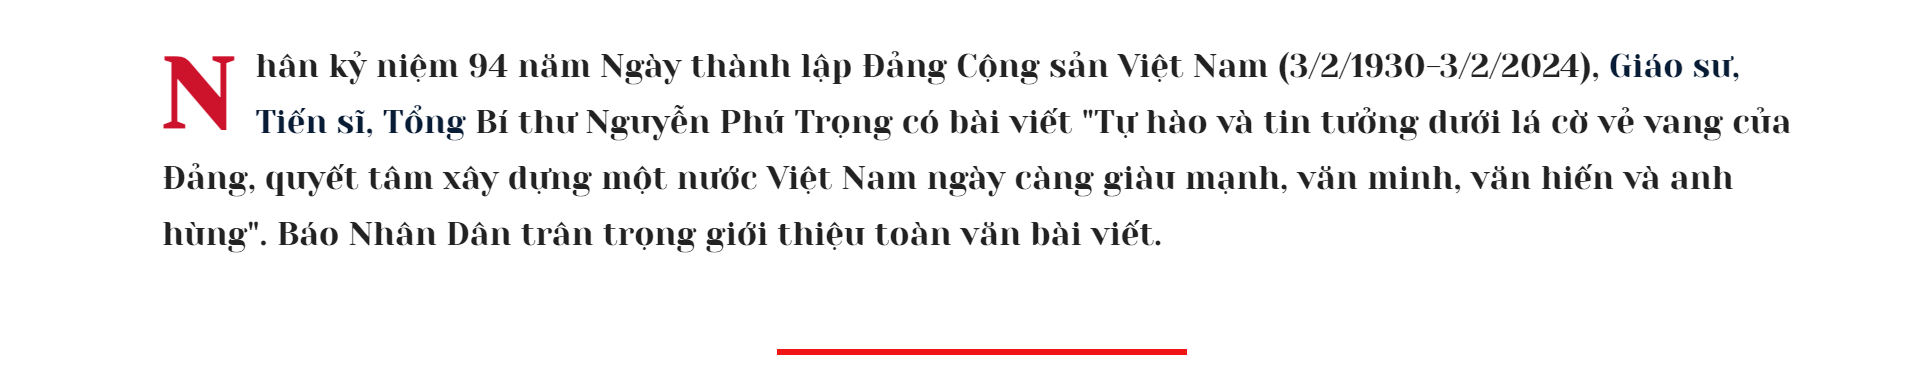 Tự hào, tin tưởng dưới lá cờ vẻ vang của Đảng, quyết tâm xây dựng một nước Việt Nam ngày càng giàu mạnh, văn minh, văn hiến và anh hùng- Ảnh 1.